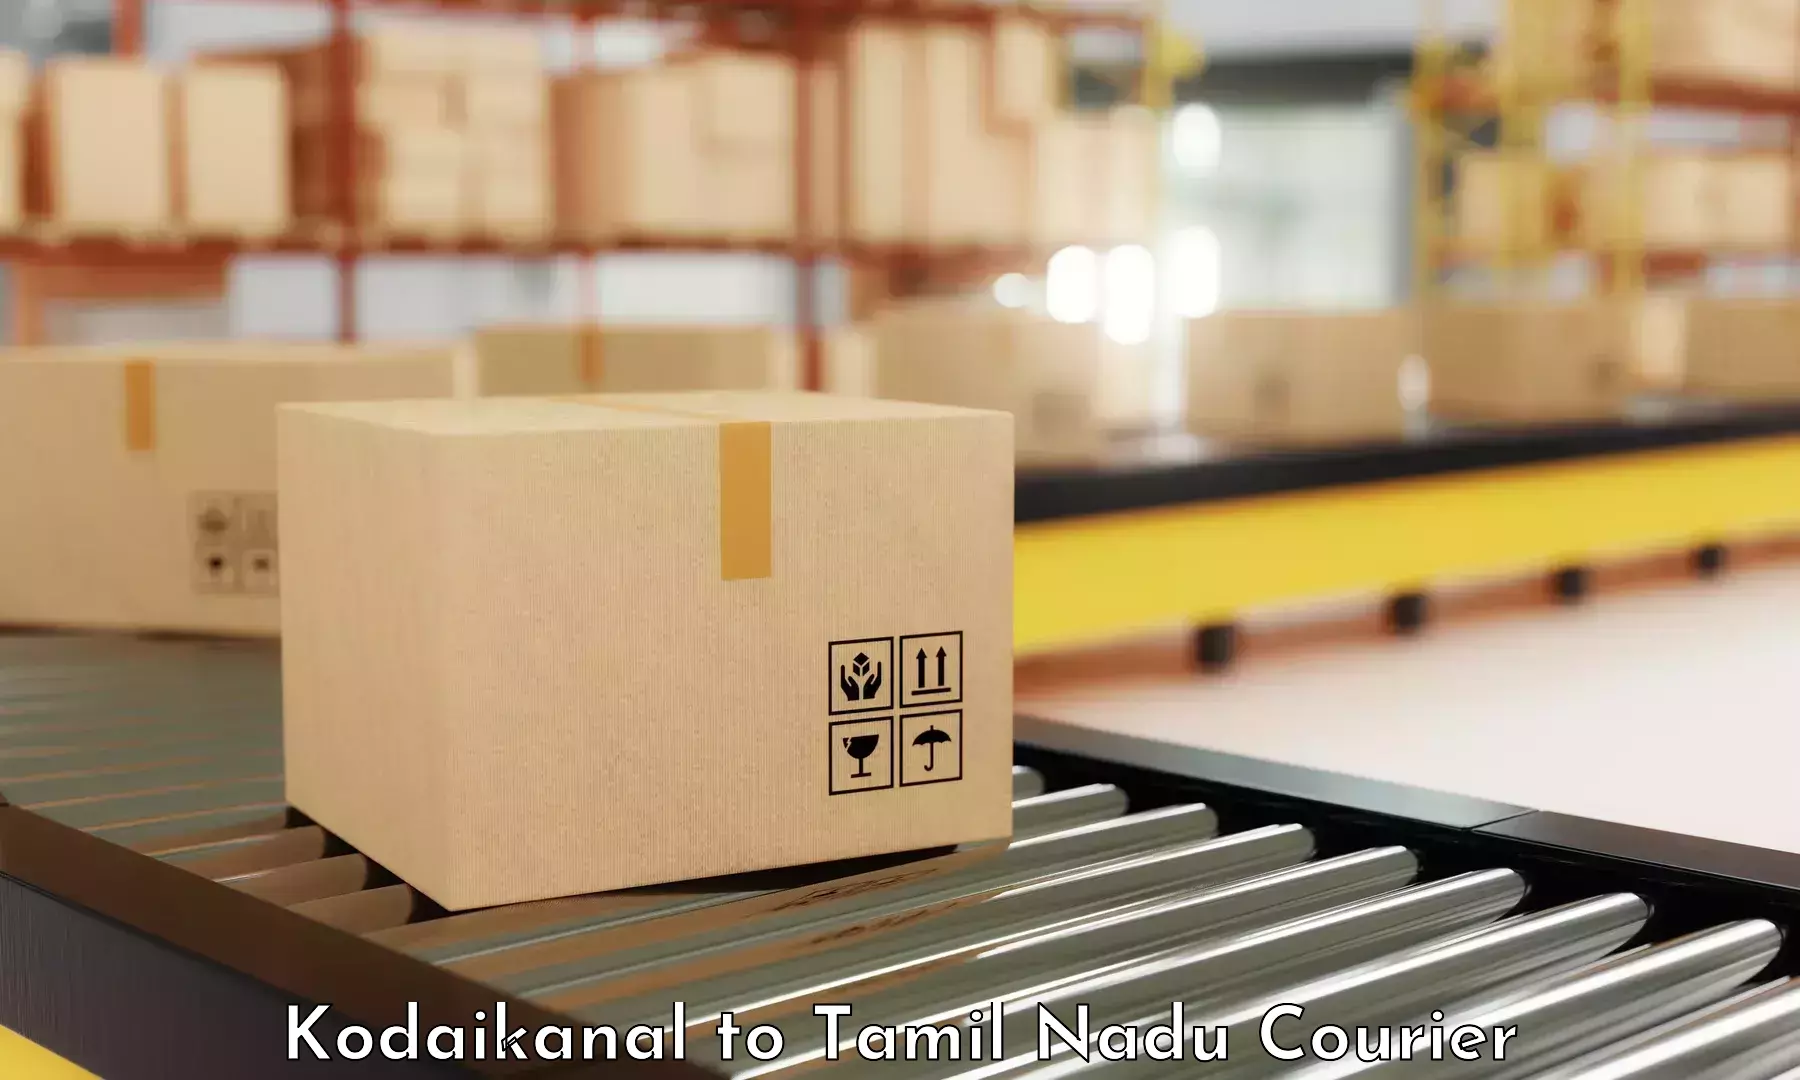 Advanced delivery network Kodaikanal to Avinashi